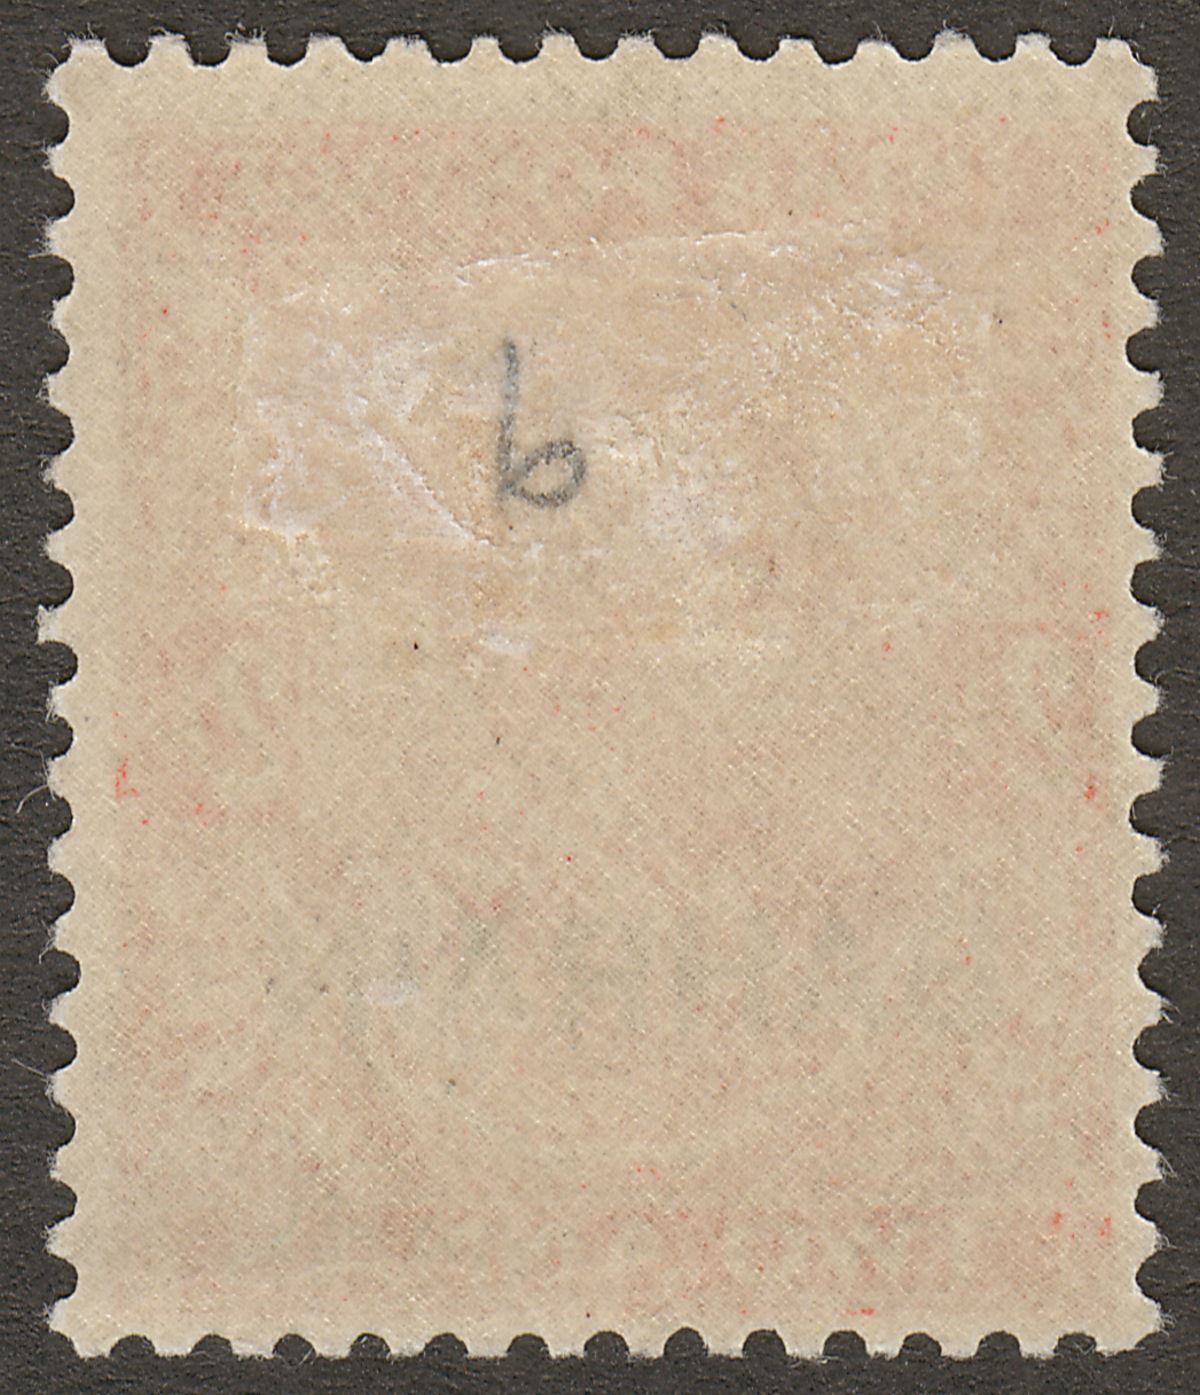 Bahrain 1937 KGV 2a Vermilion Small Die Mint SG17a